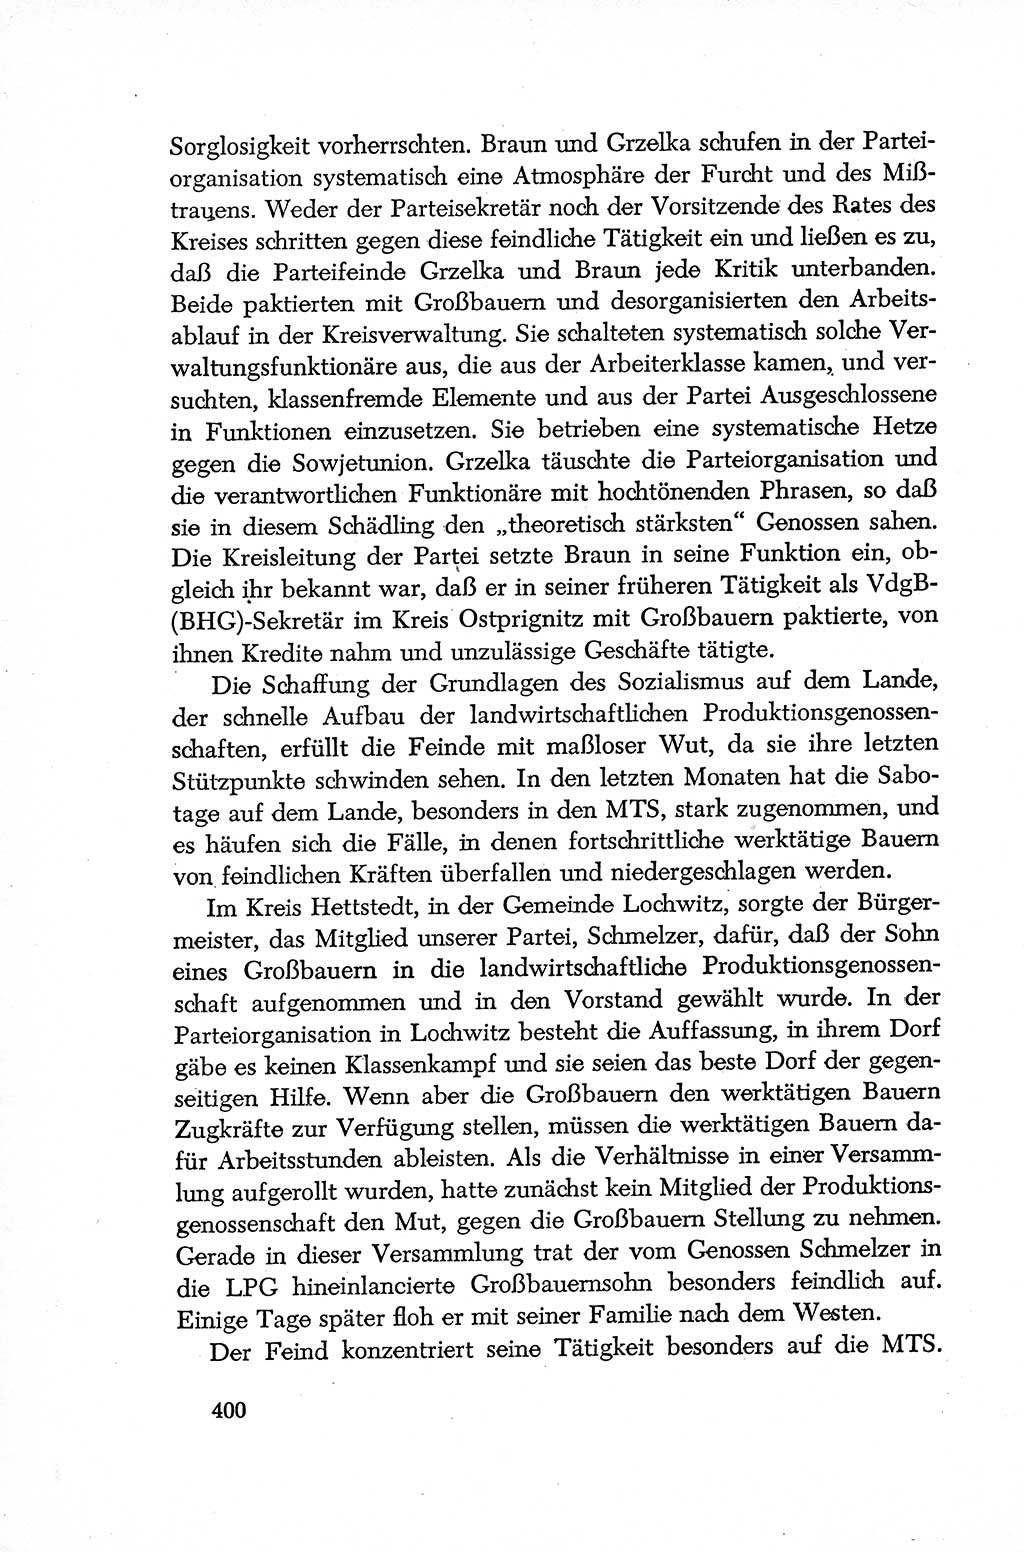 Dokumente der Sozialistischen Einheitspartei Deutschlands (SED) [Deutsche Demokratische Republik (DDR)] 1952-1953, Seite 400 (Dok. SED DDR 1952-1953, S. 400)